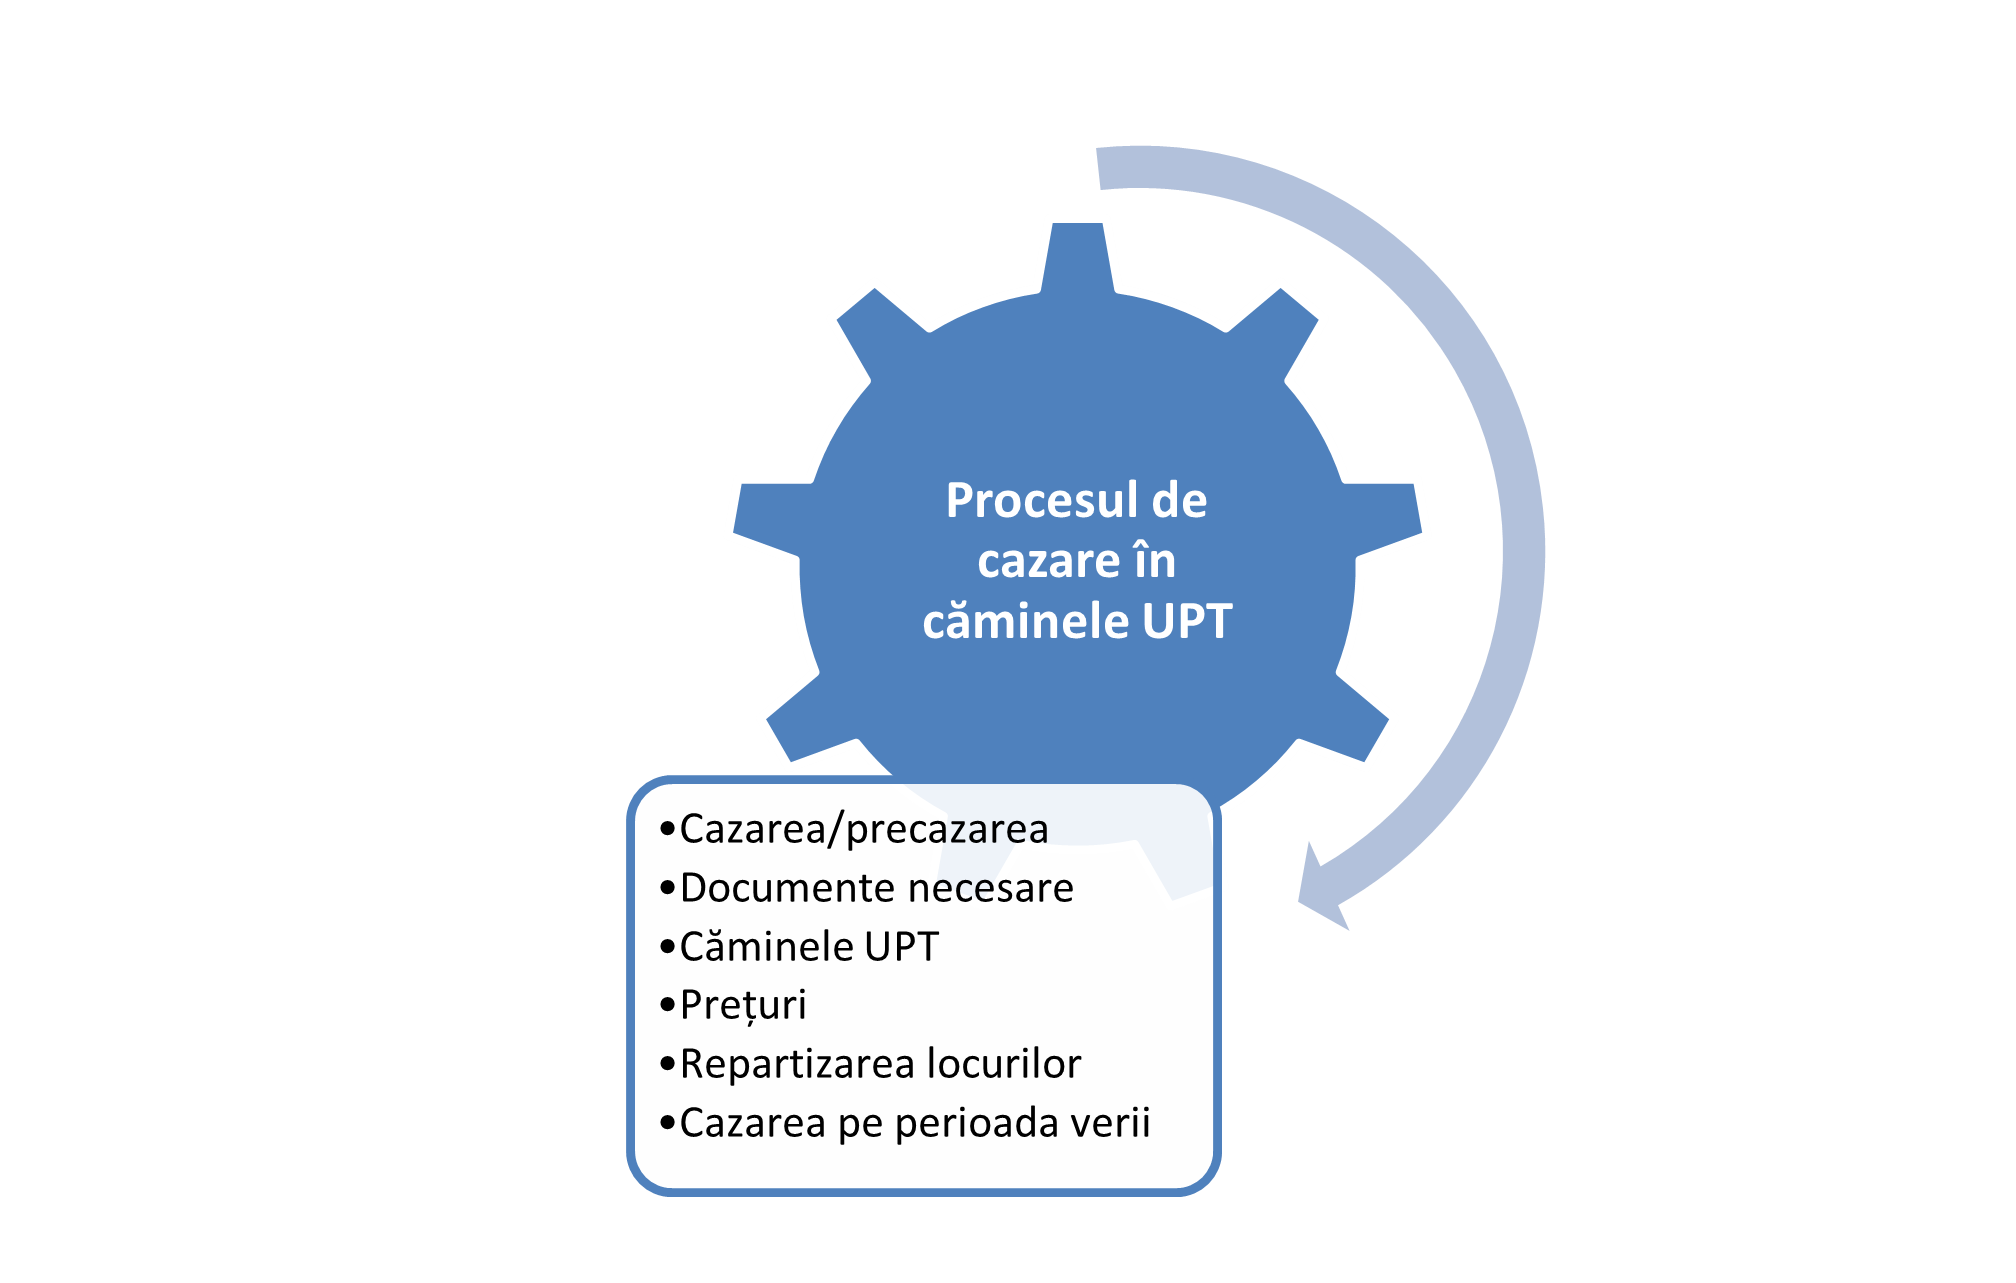 Informațiile vizate în articolul despre procesul de cazare în căminele UPT